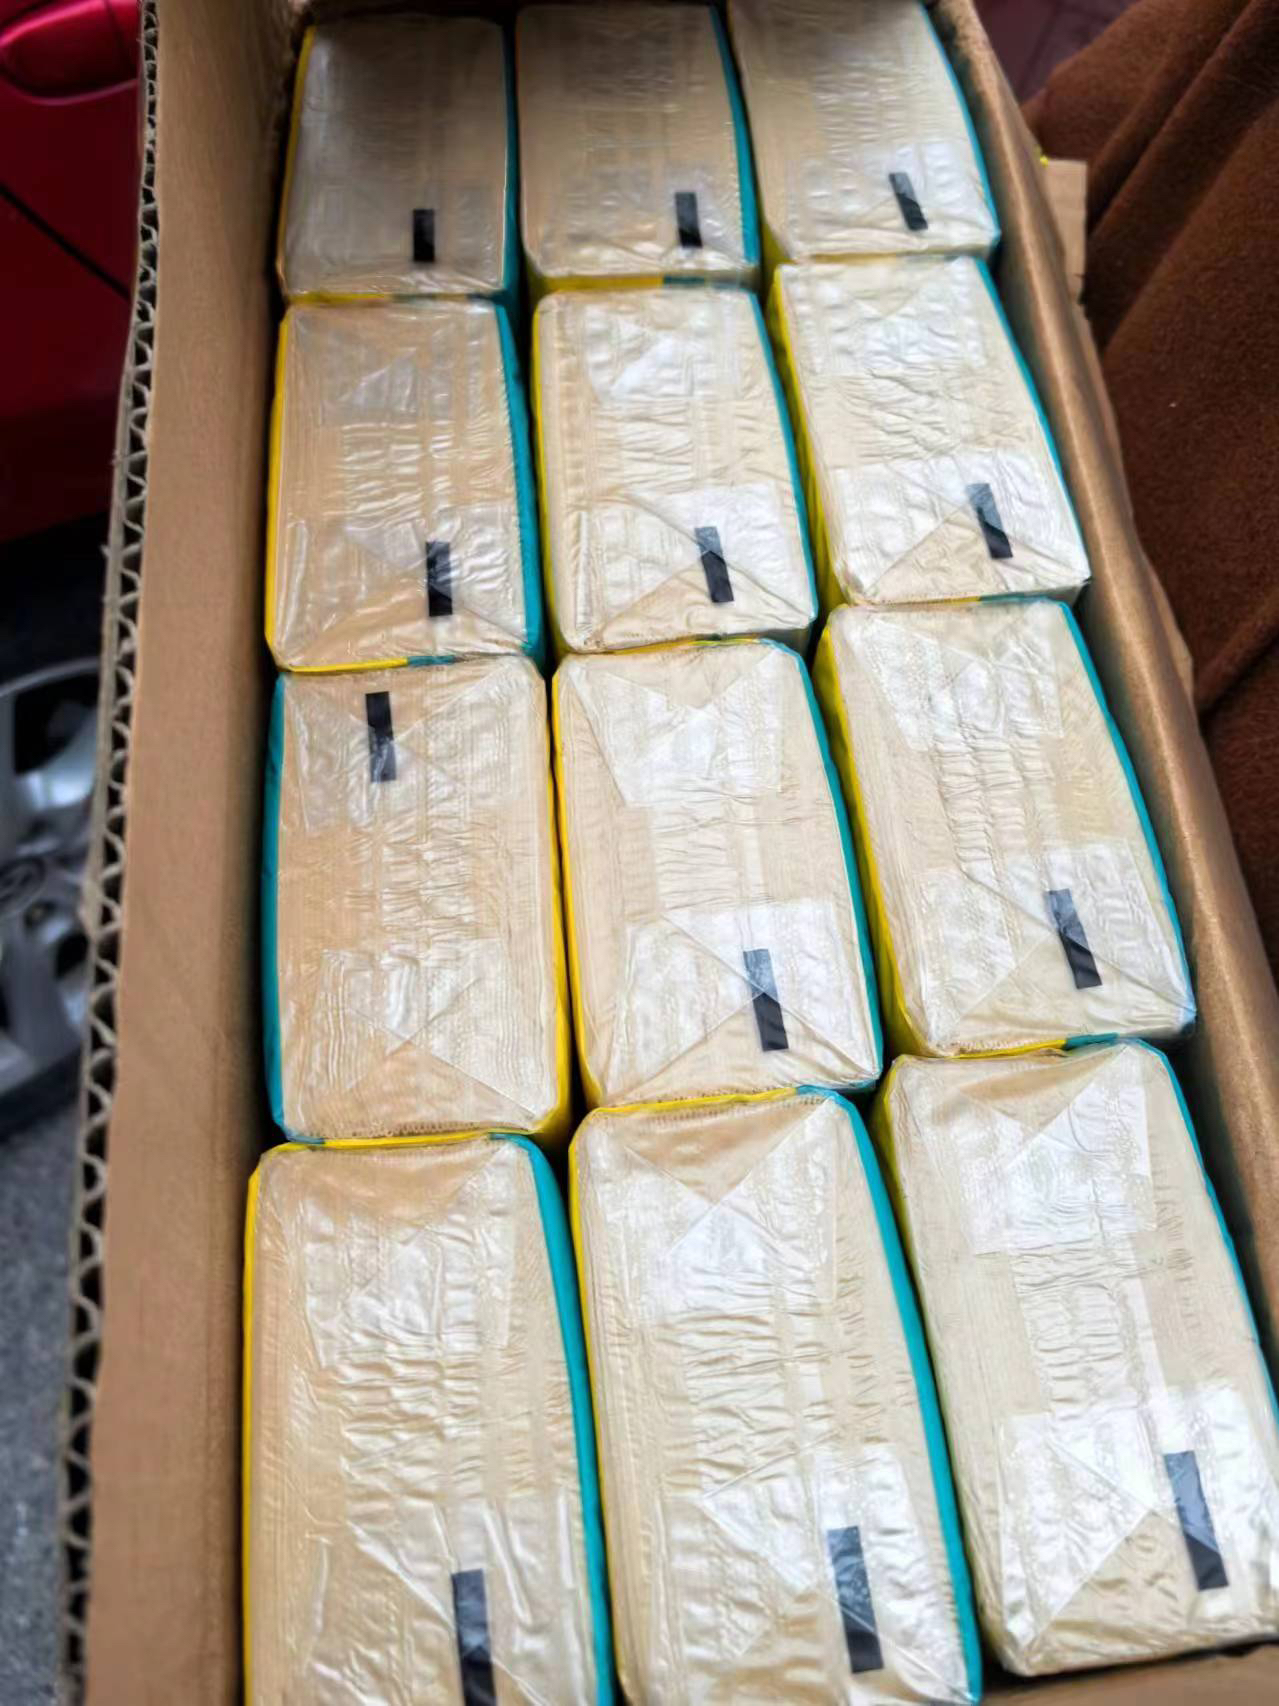 斑布竹浆本色家用抽纸巾卫生餐巾纸3层100抽24包整箱实惠晒单图